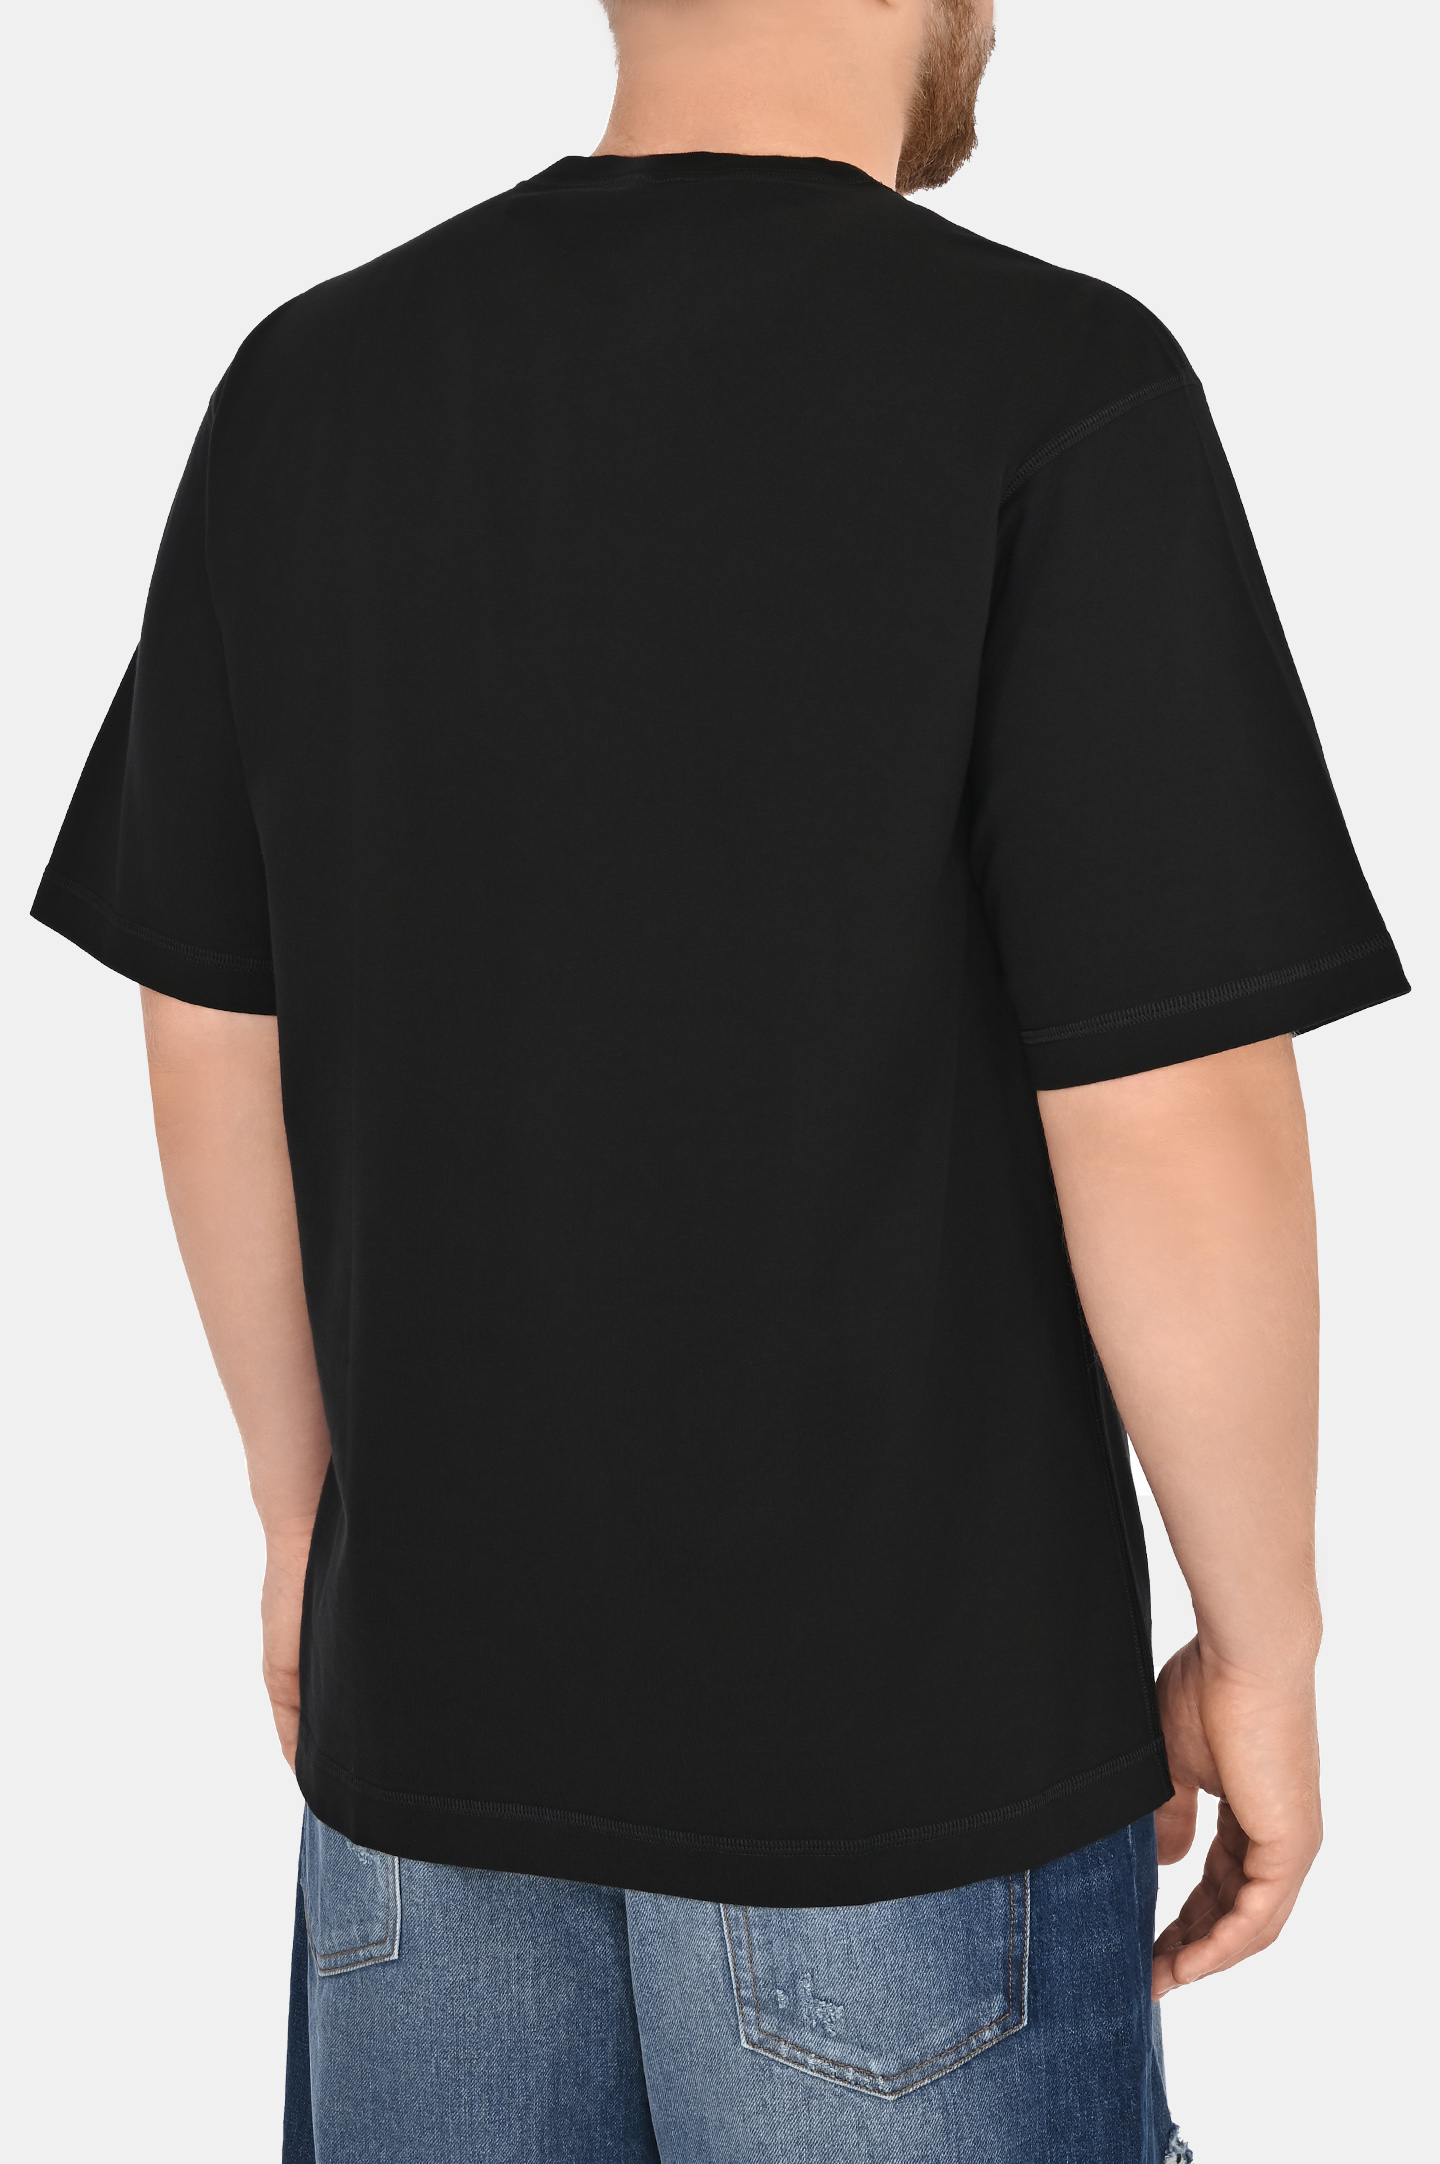 Хлопковая футболка с логотипом и принтом DOLCE & GABBANA G8PN9T G7K1V, цвет: Черный, Мужской